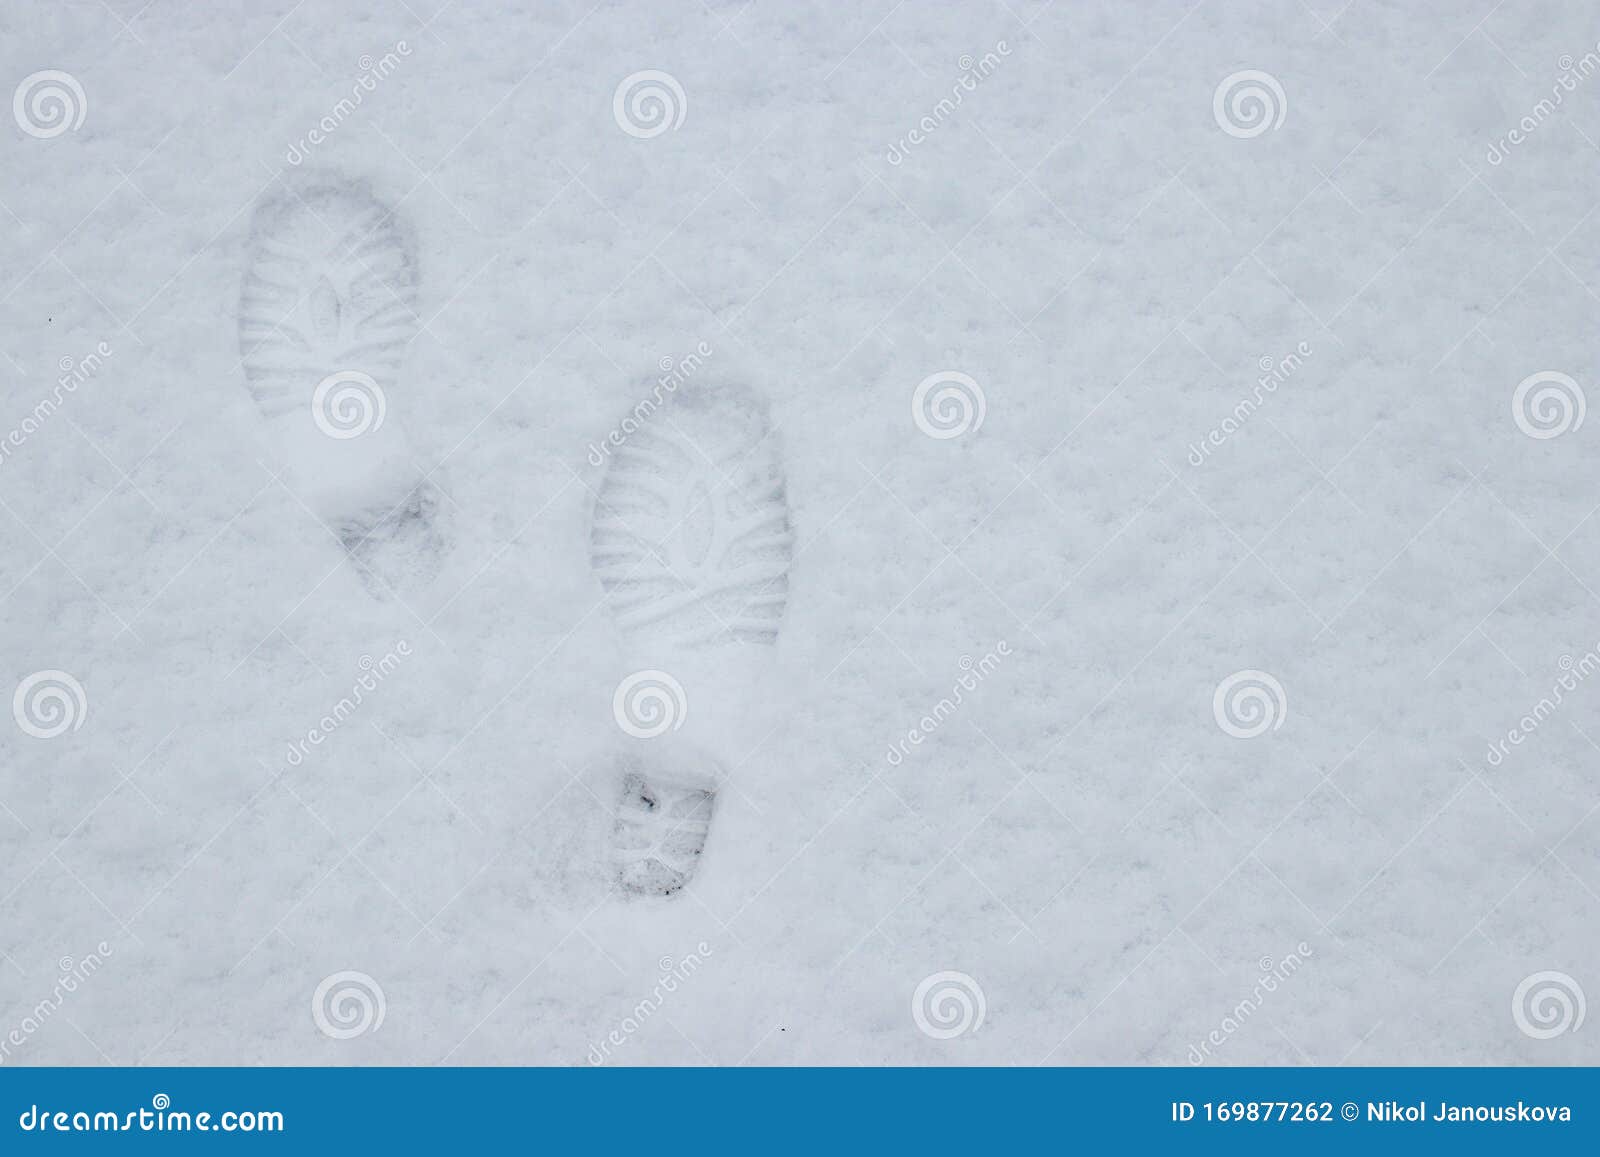 Snow white feet